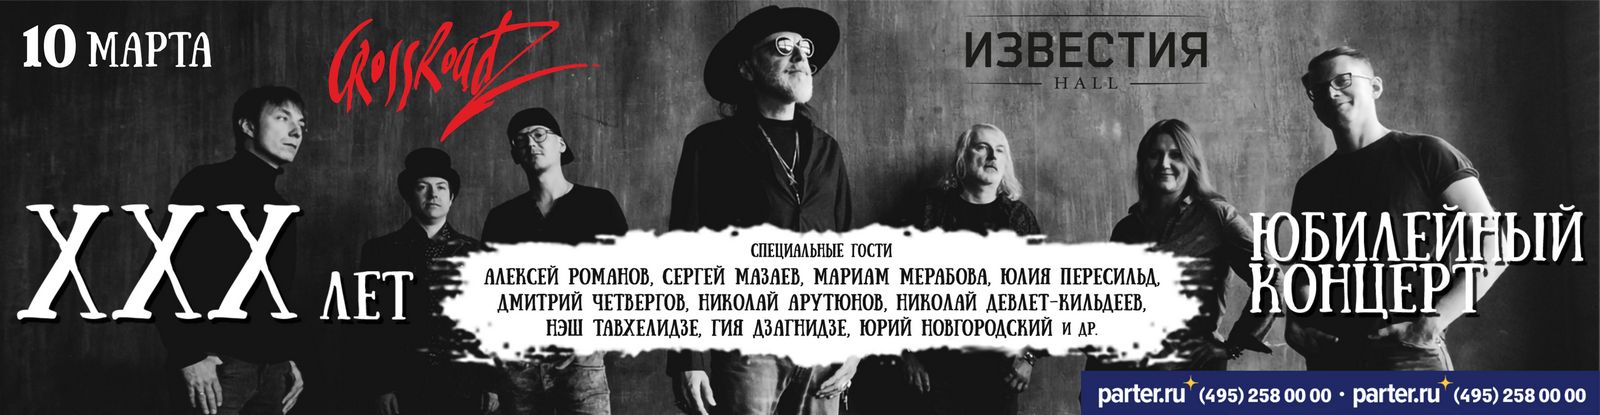 10 марта Дмитрий Четвергов выступит в юбилейном концерте The CrossRoadz